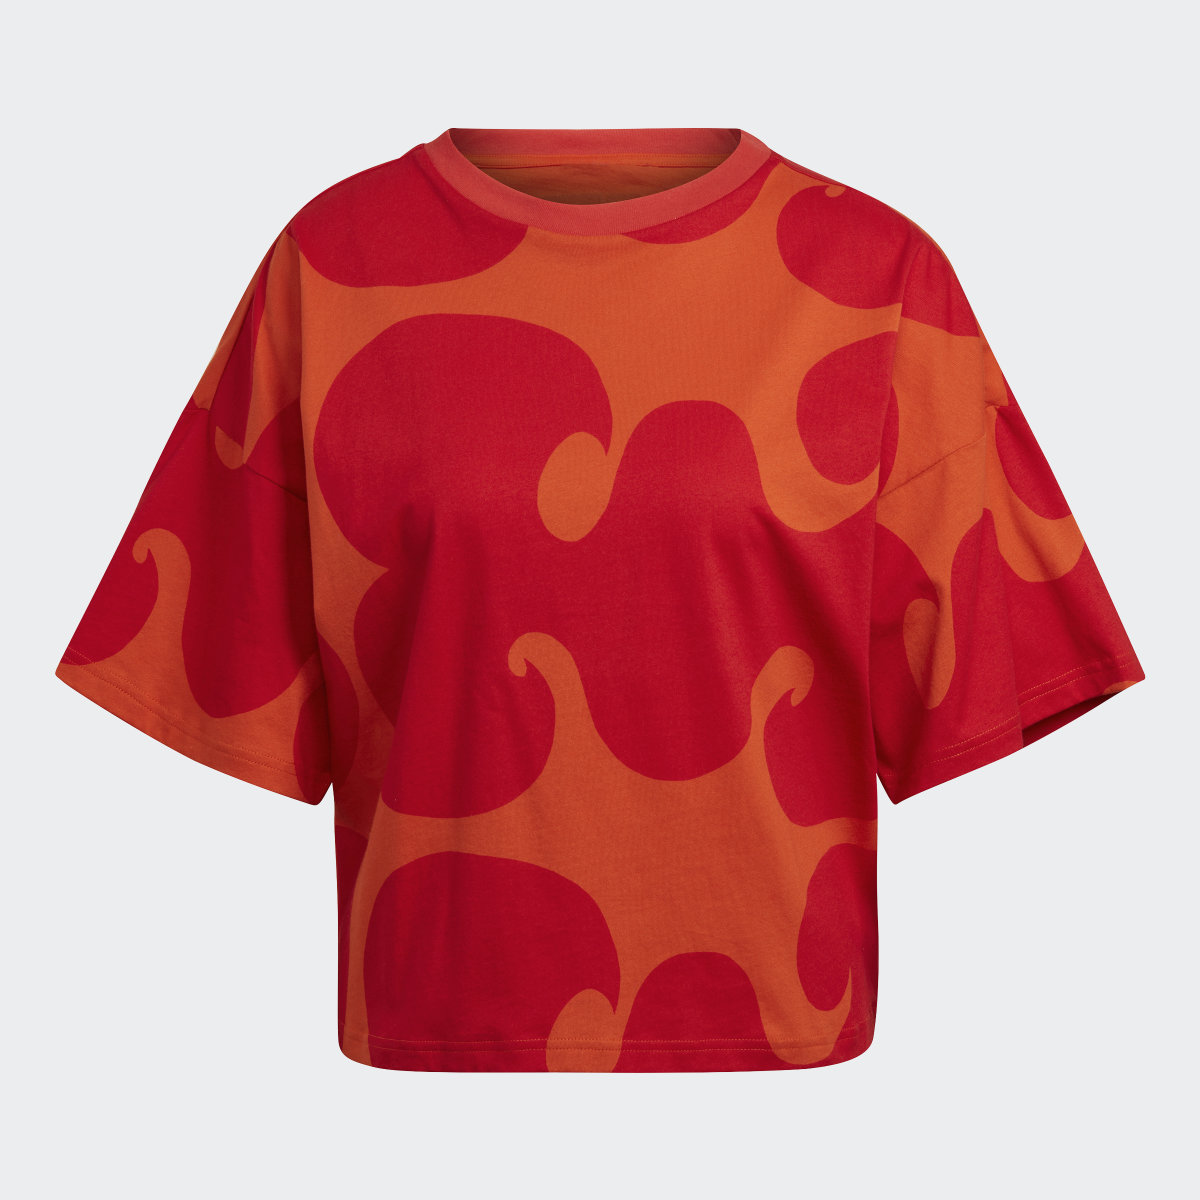 Adidas T-shirt Marimekko. 5